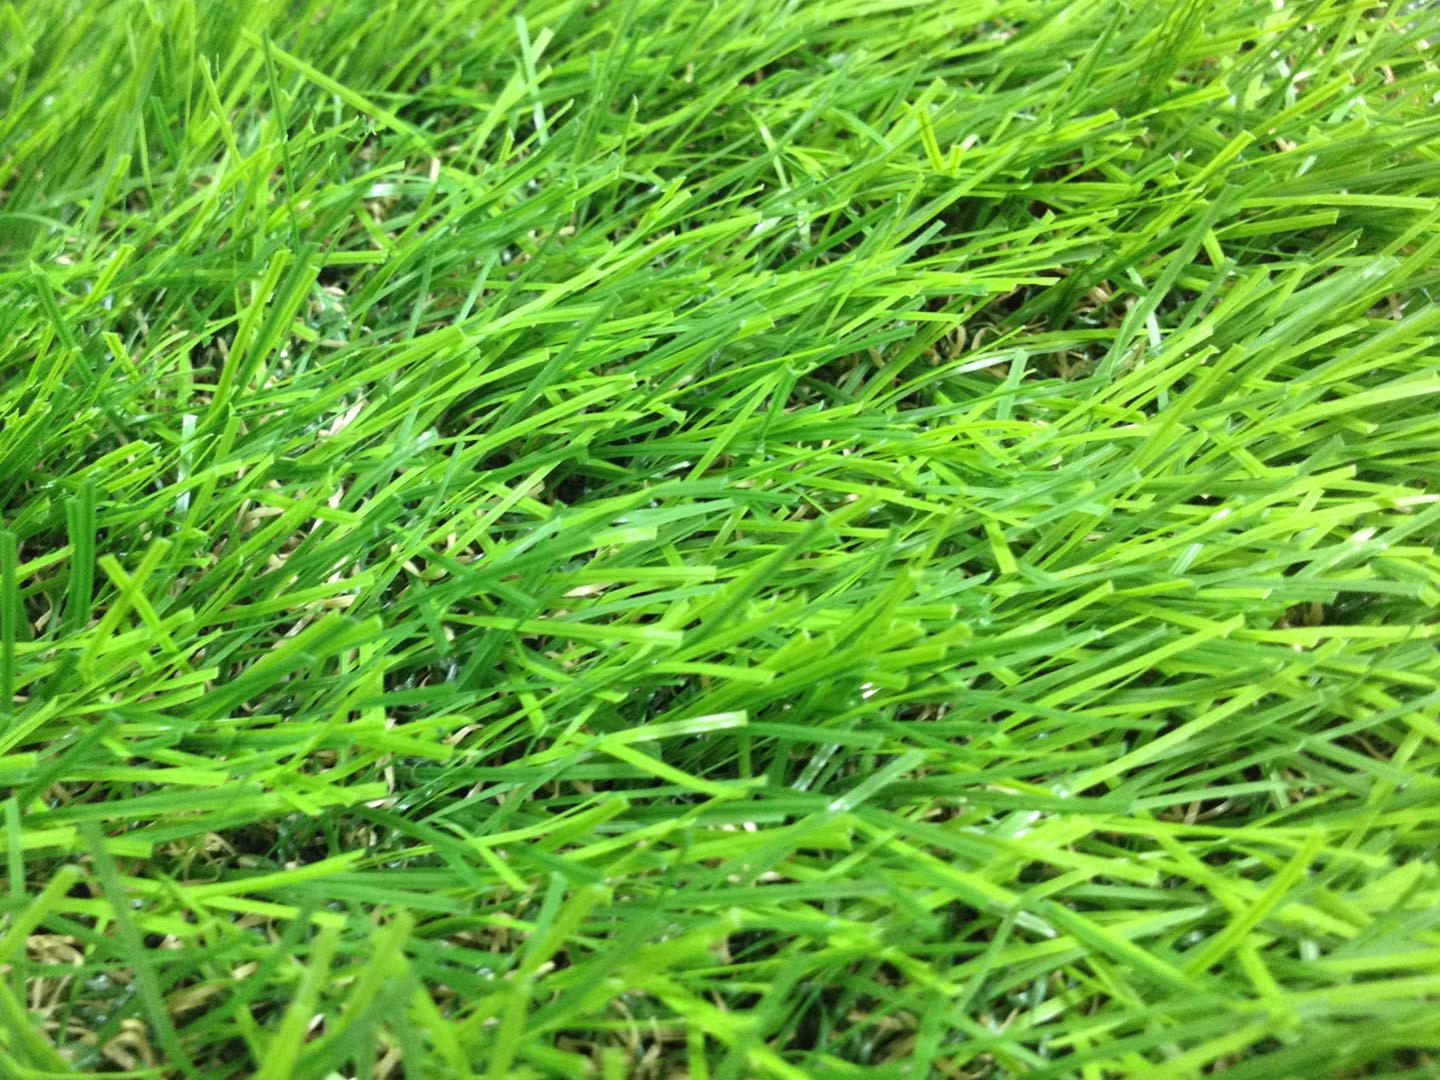 หญ้าเทียม อีซี่กราส เอสซีจี เซฟวิ่งกราส รุ่นสั่งตัด ความยาวเส้นหญ้า 4 ซม. สี ไบรท์กรีน